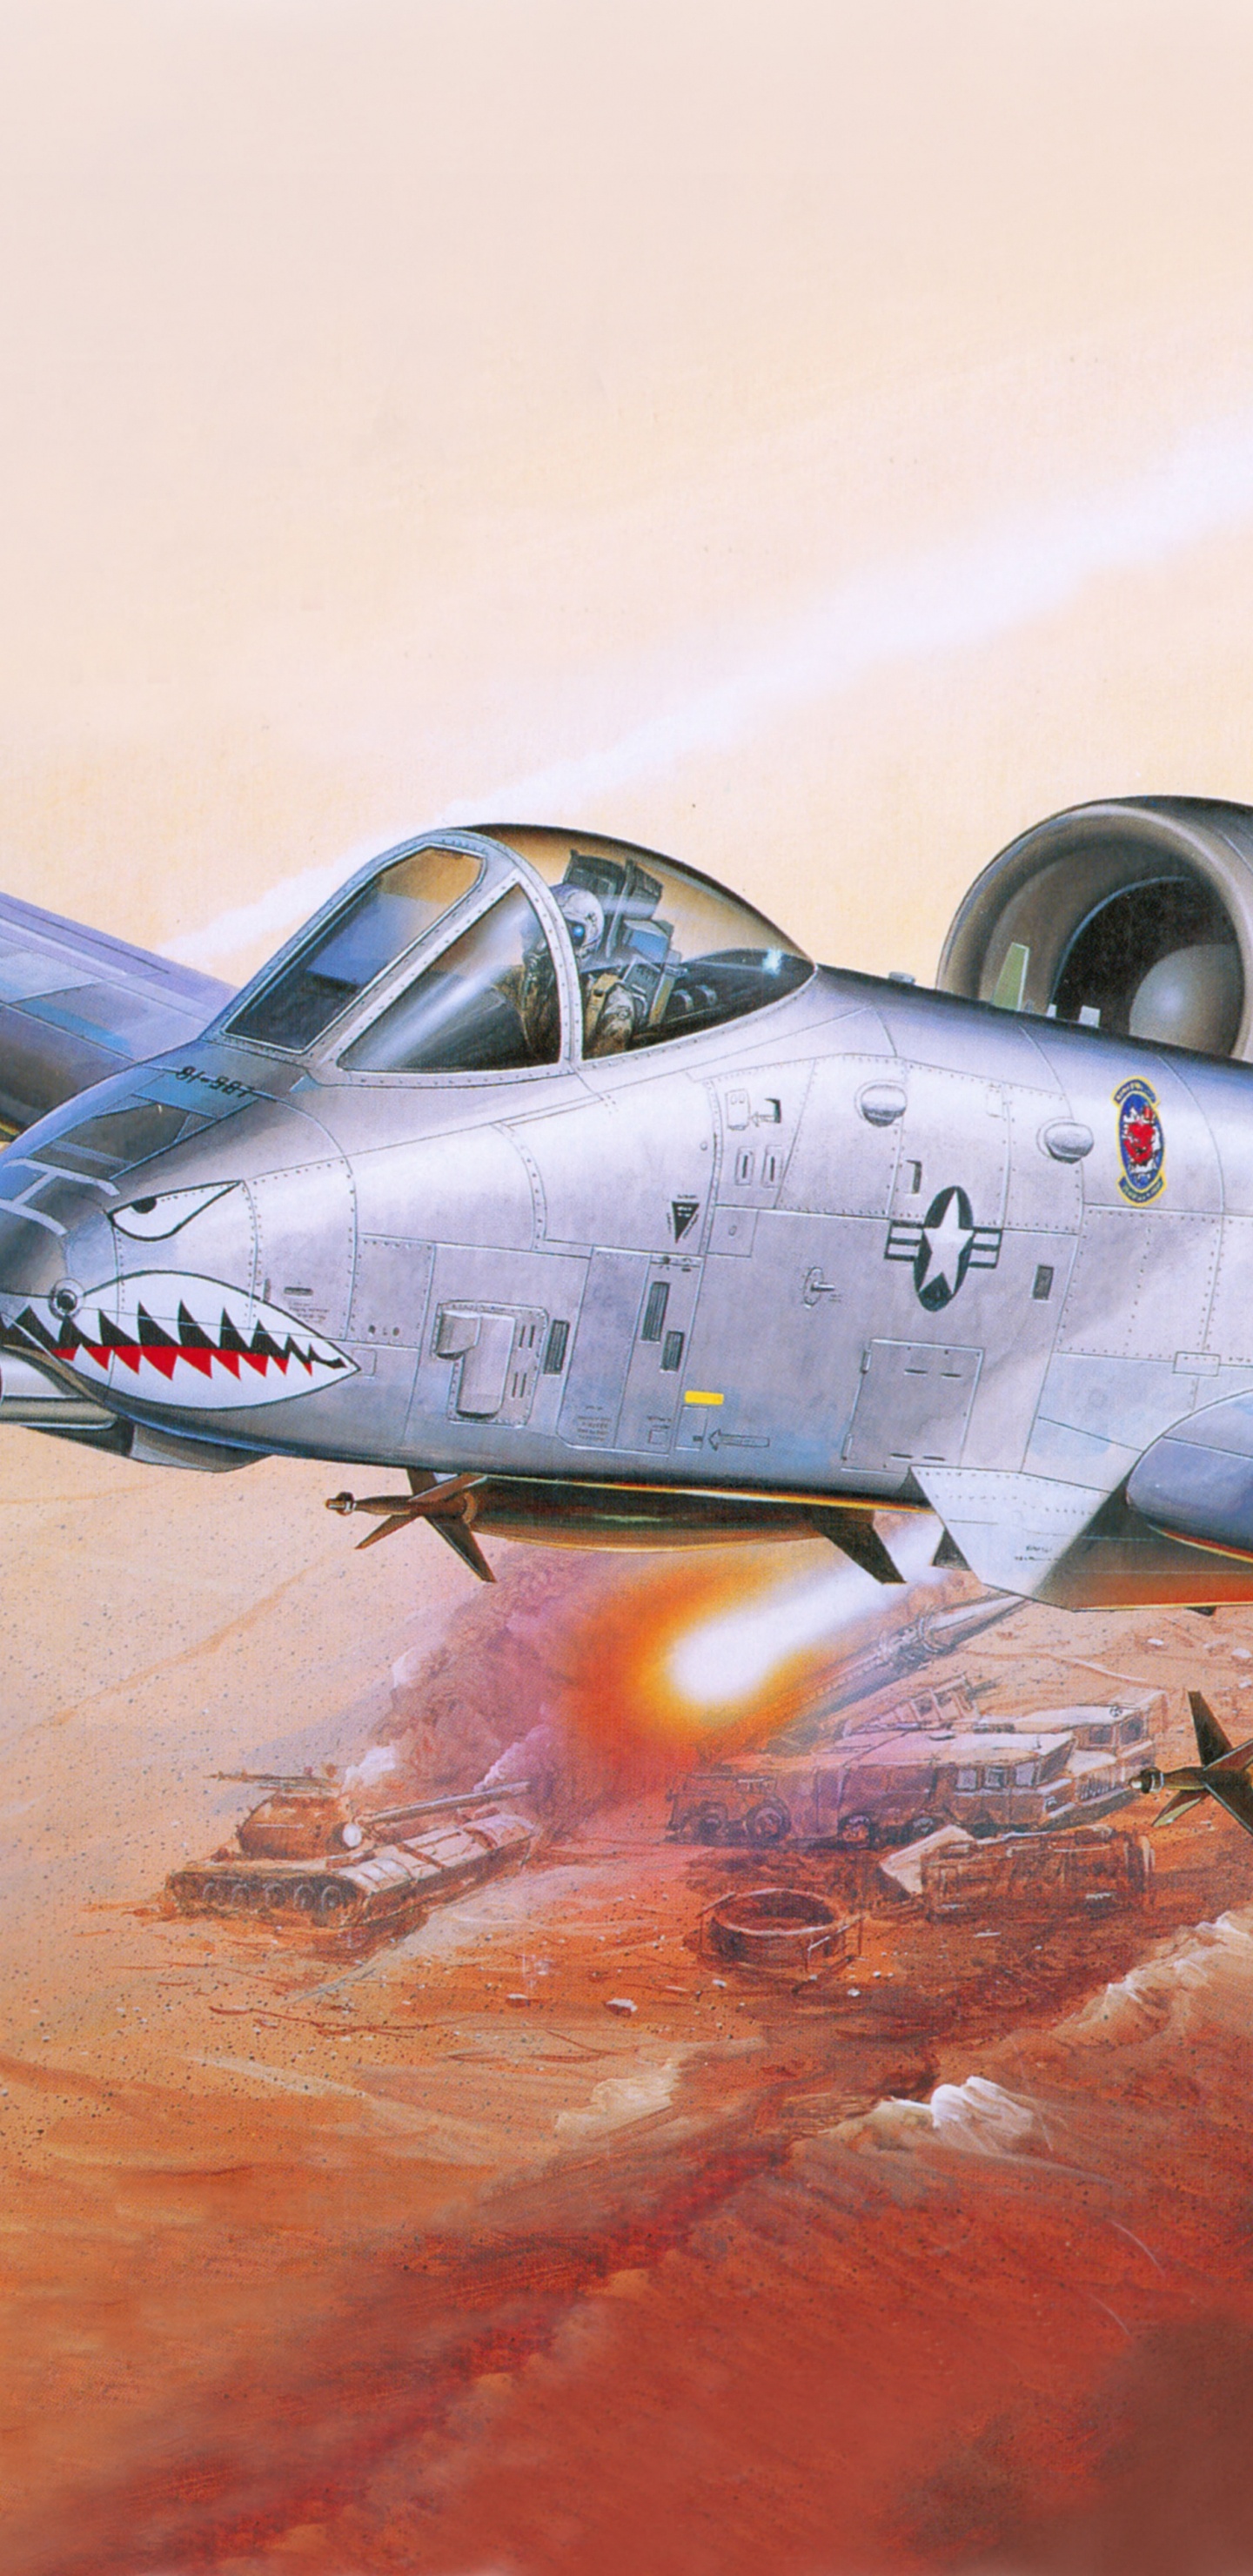 塑料模型, 航空, 喷气式飞机, 军用飞机, 空军 壁纸 1440x2960 允许